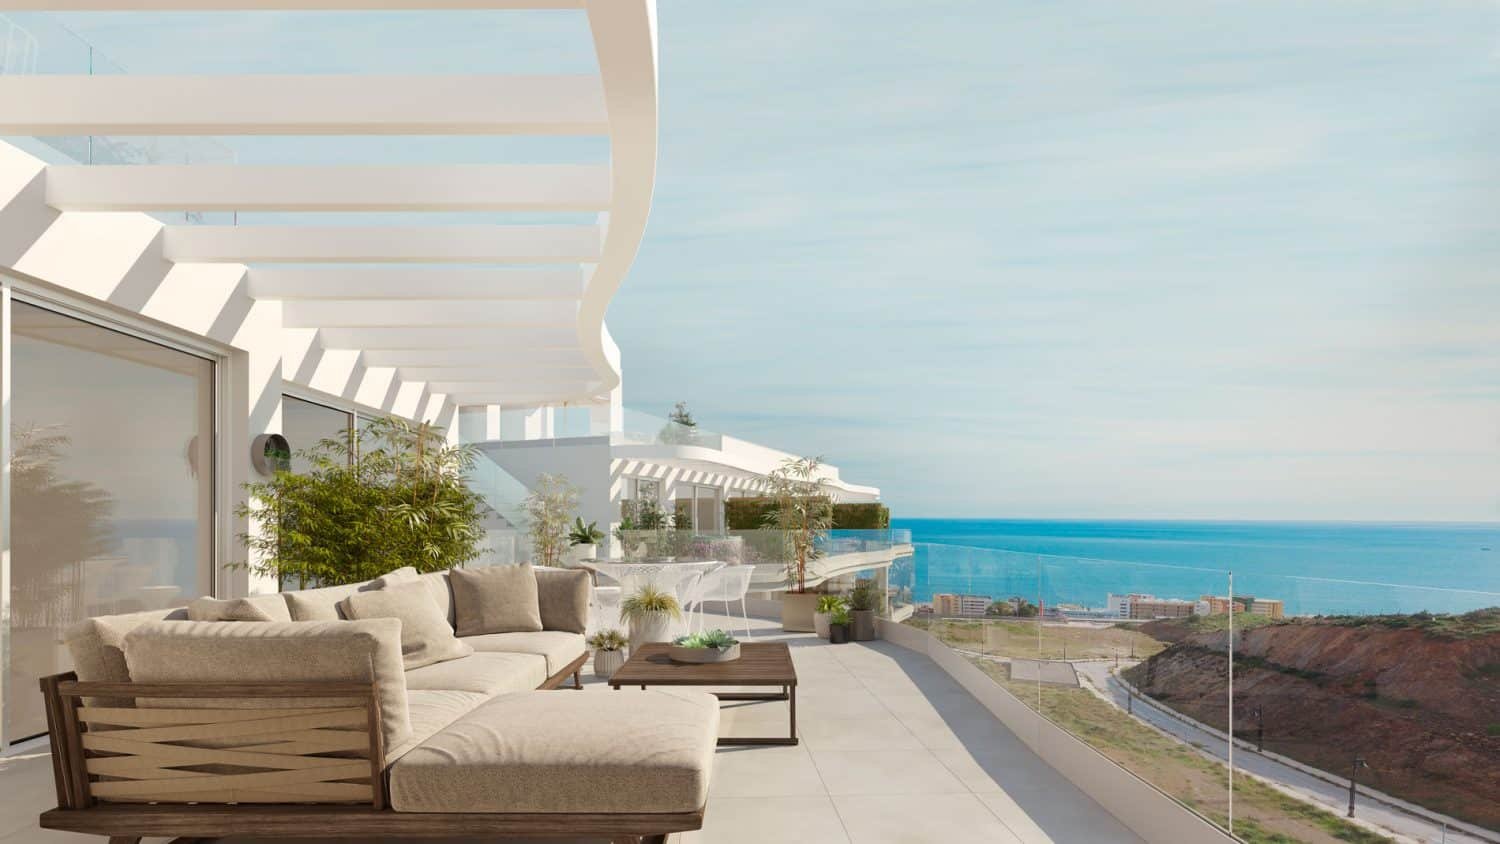 Archimia Panorama I E2Lowres 1500X844 1 Real Estate Marbella